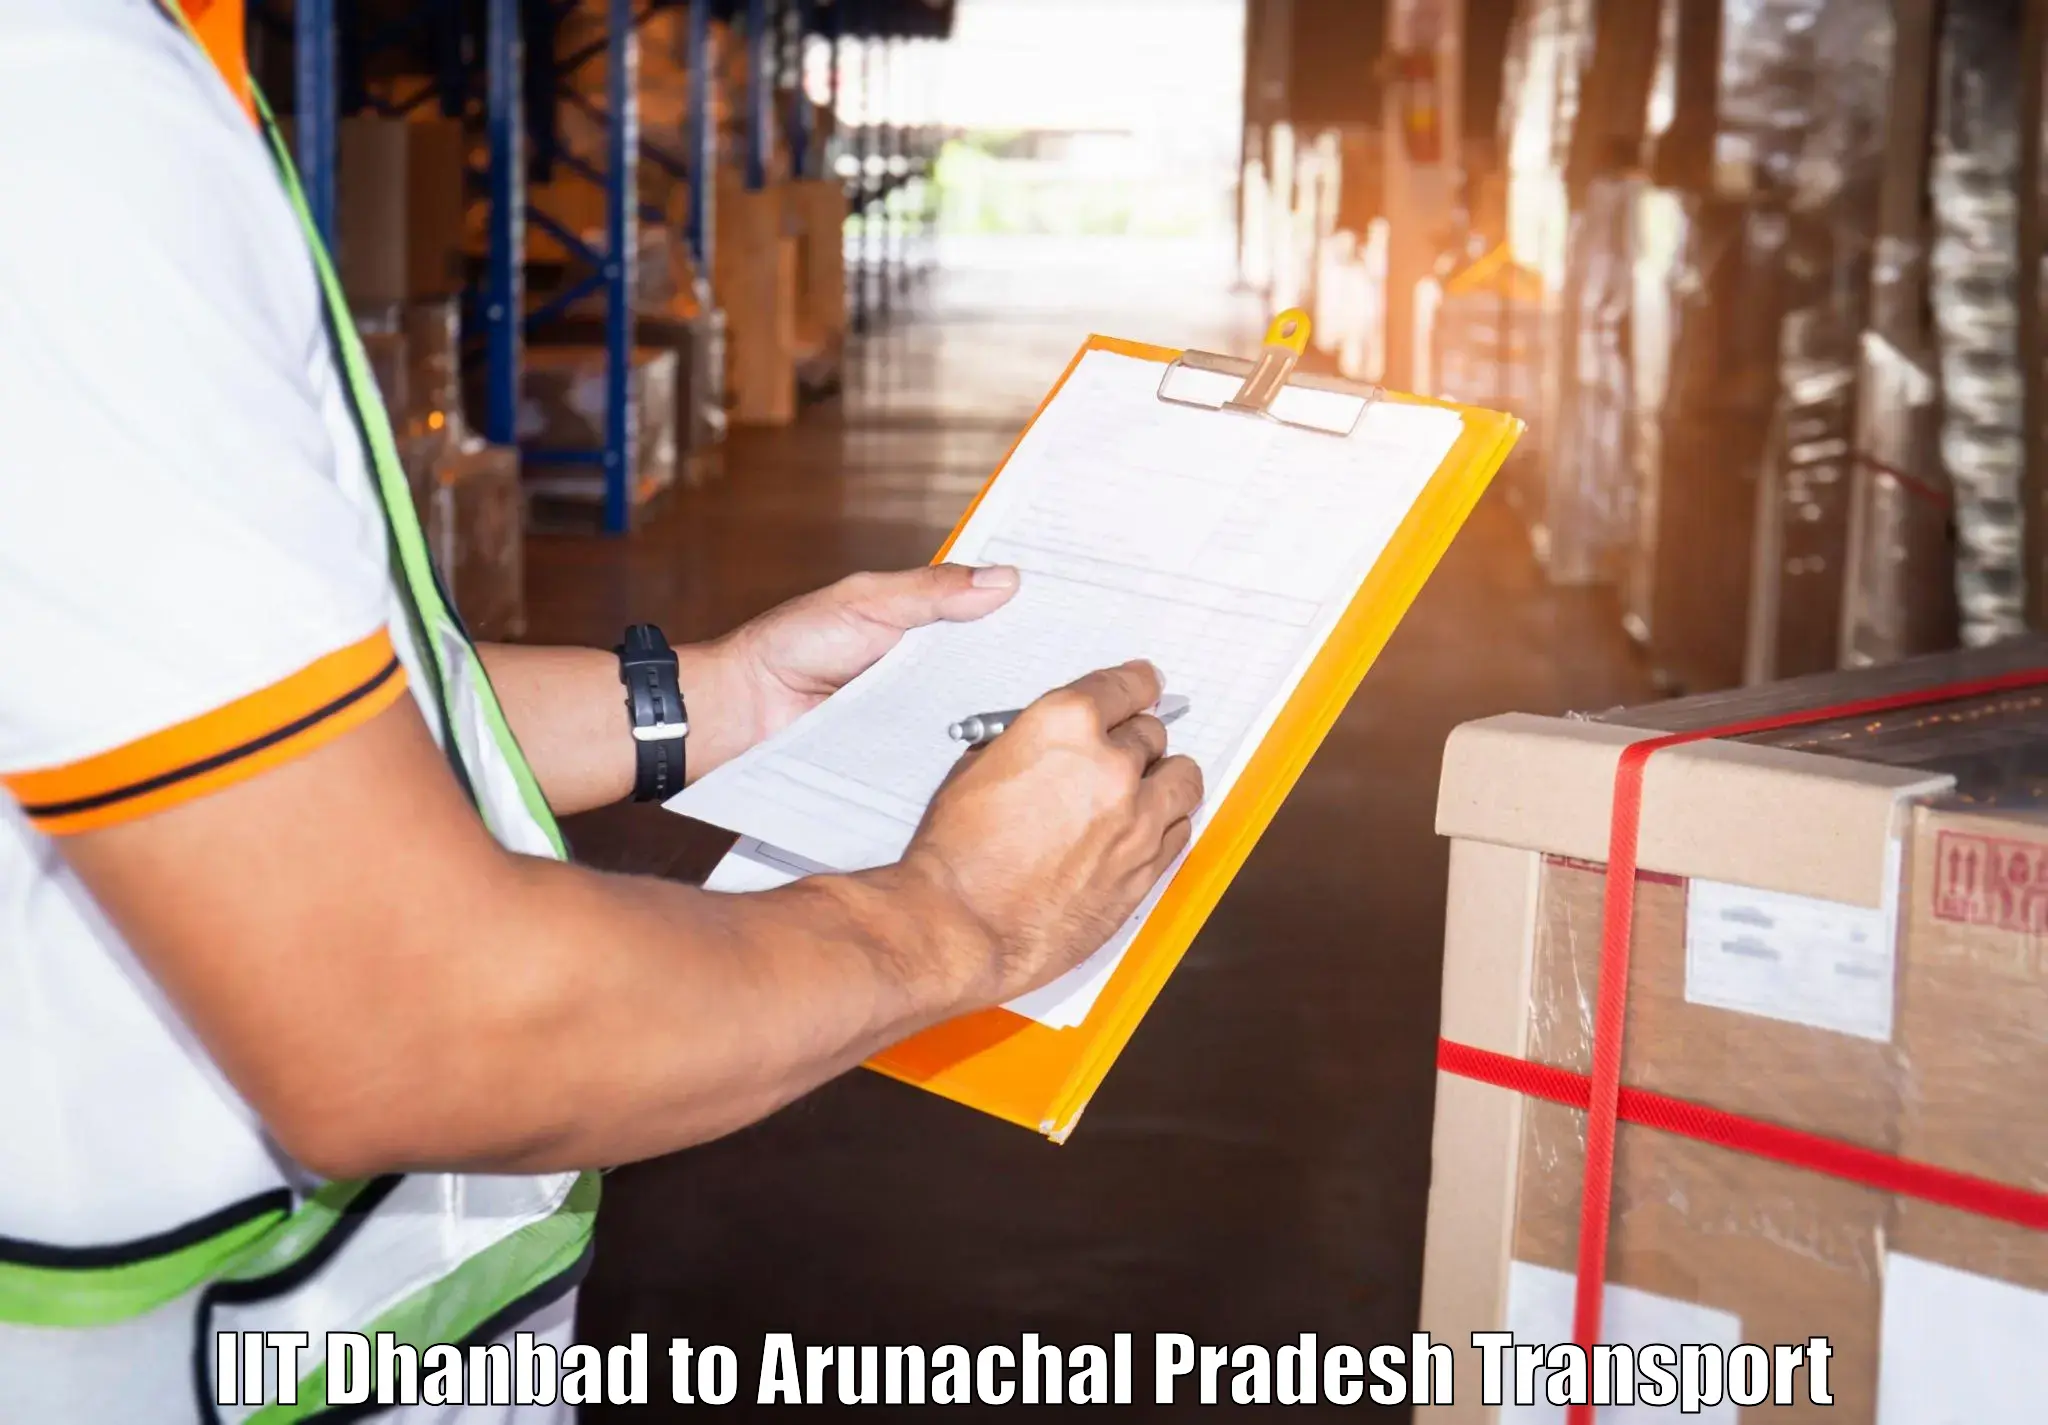 International cargo transportation services IIT Dhanbad to Arunachal Pradesh